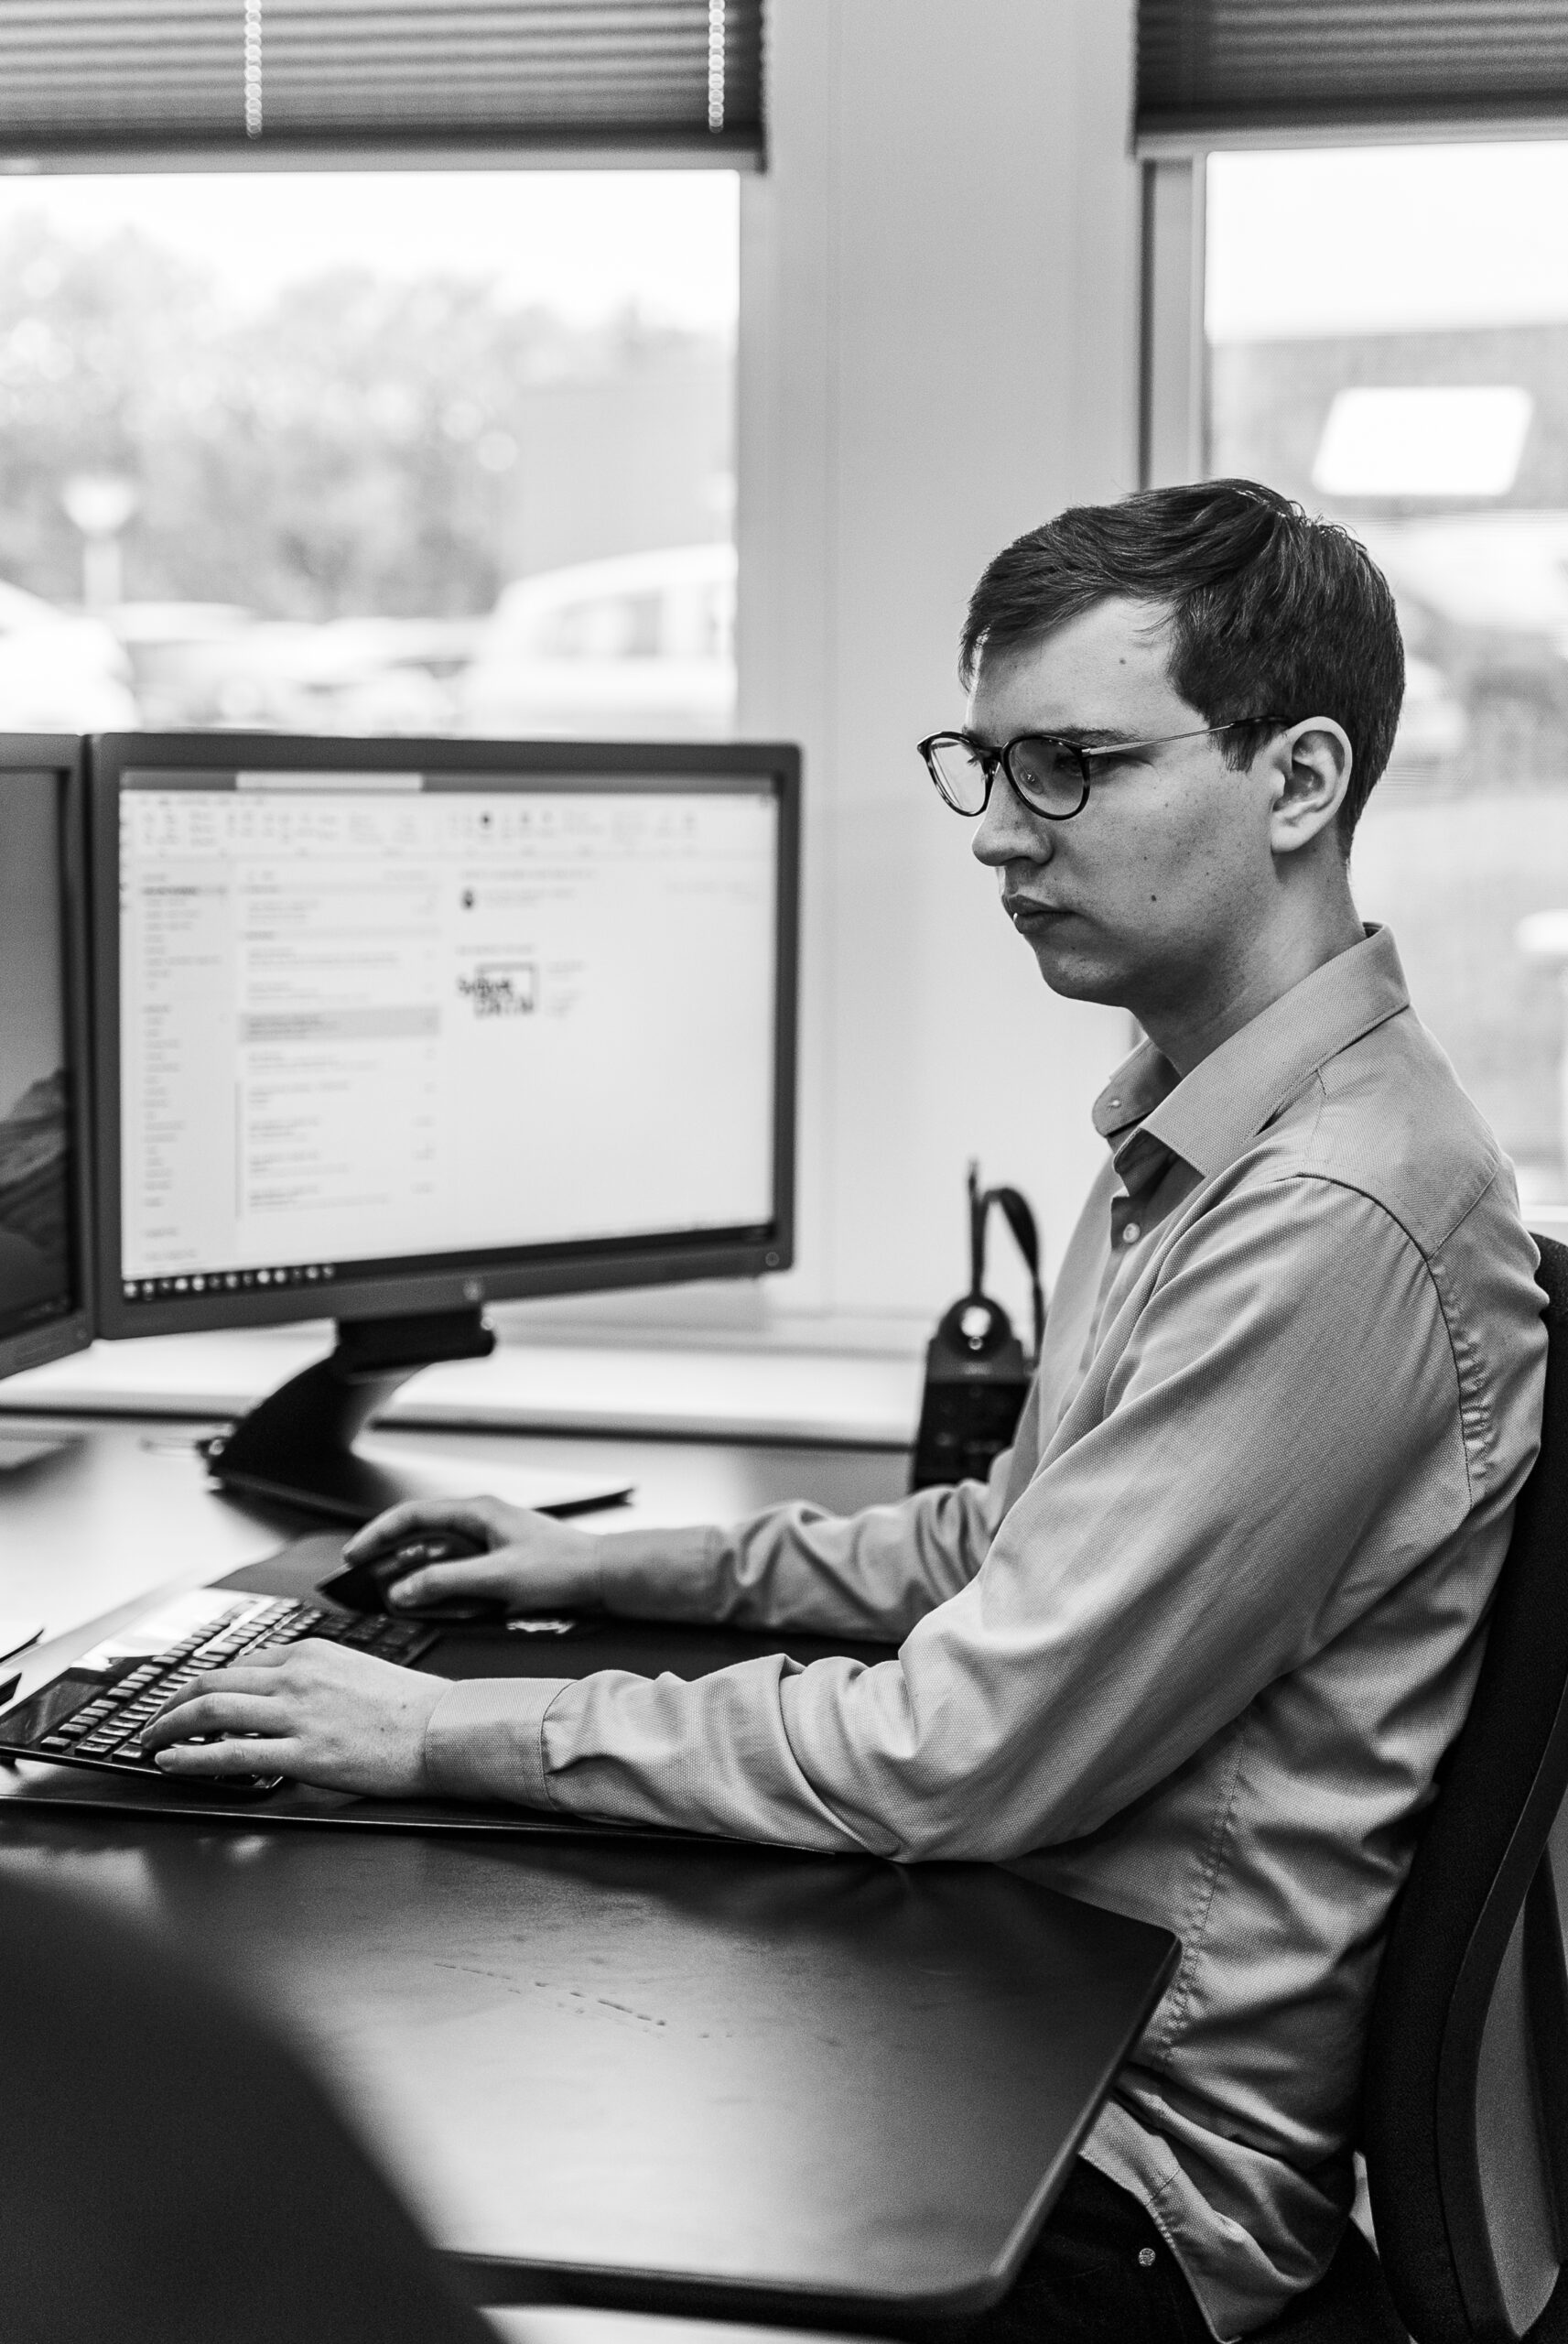 Mand, der sidder og arbejder ved computer med outlook åbent, som er et af Microsoft 365 produkterne